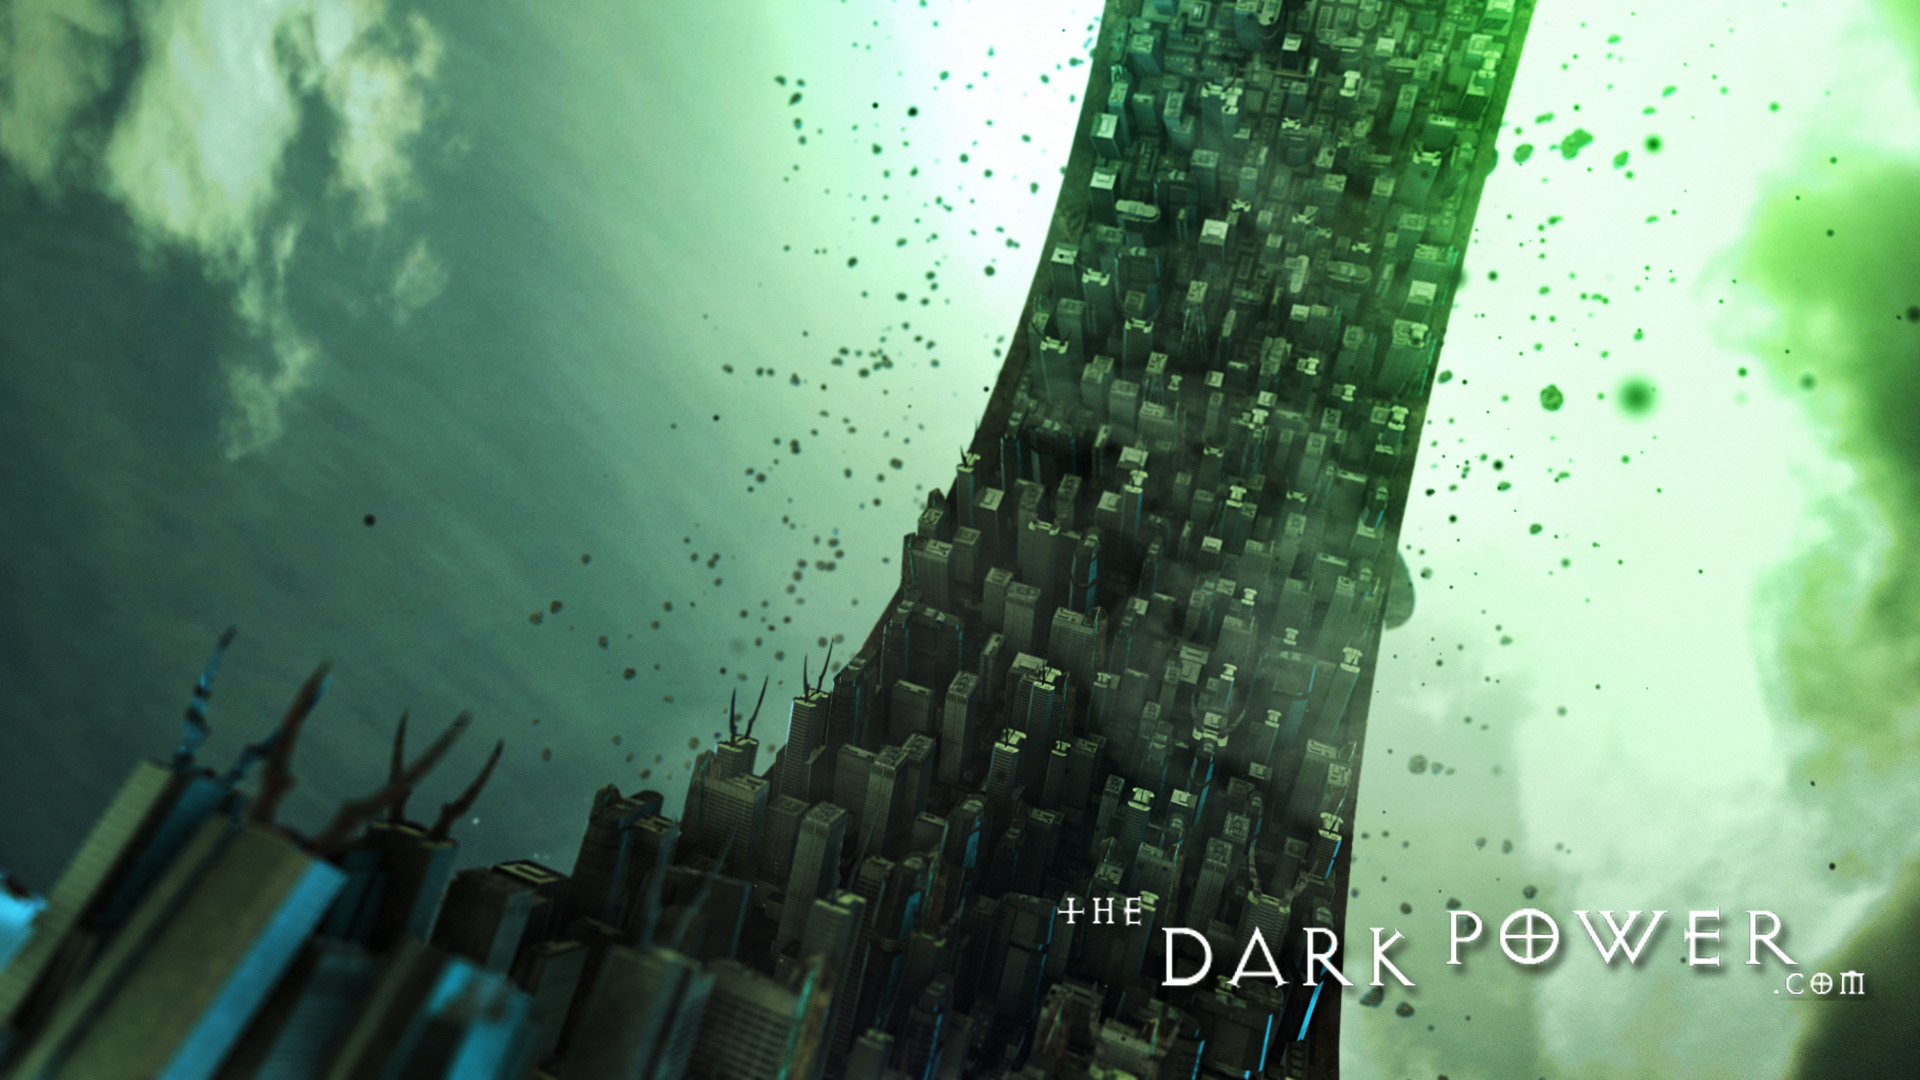 the-dark-power La città di Sigil in grafica CGI, screenshot 3 - by The Dark Power (Joe) thedarkpower.com (2018-11) © dell'autore, tutti i diritti riservati